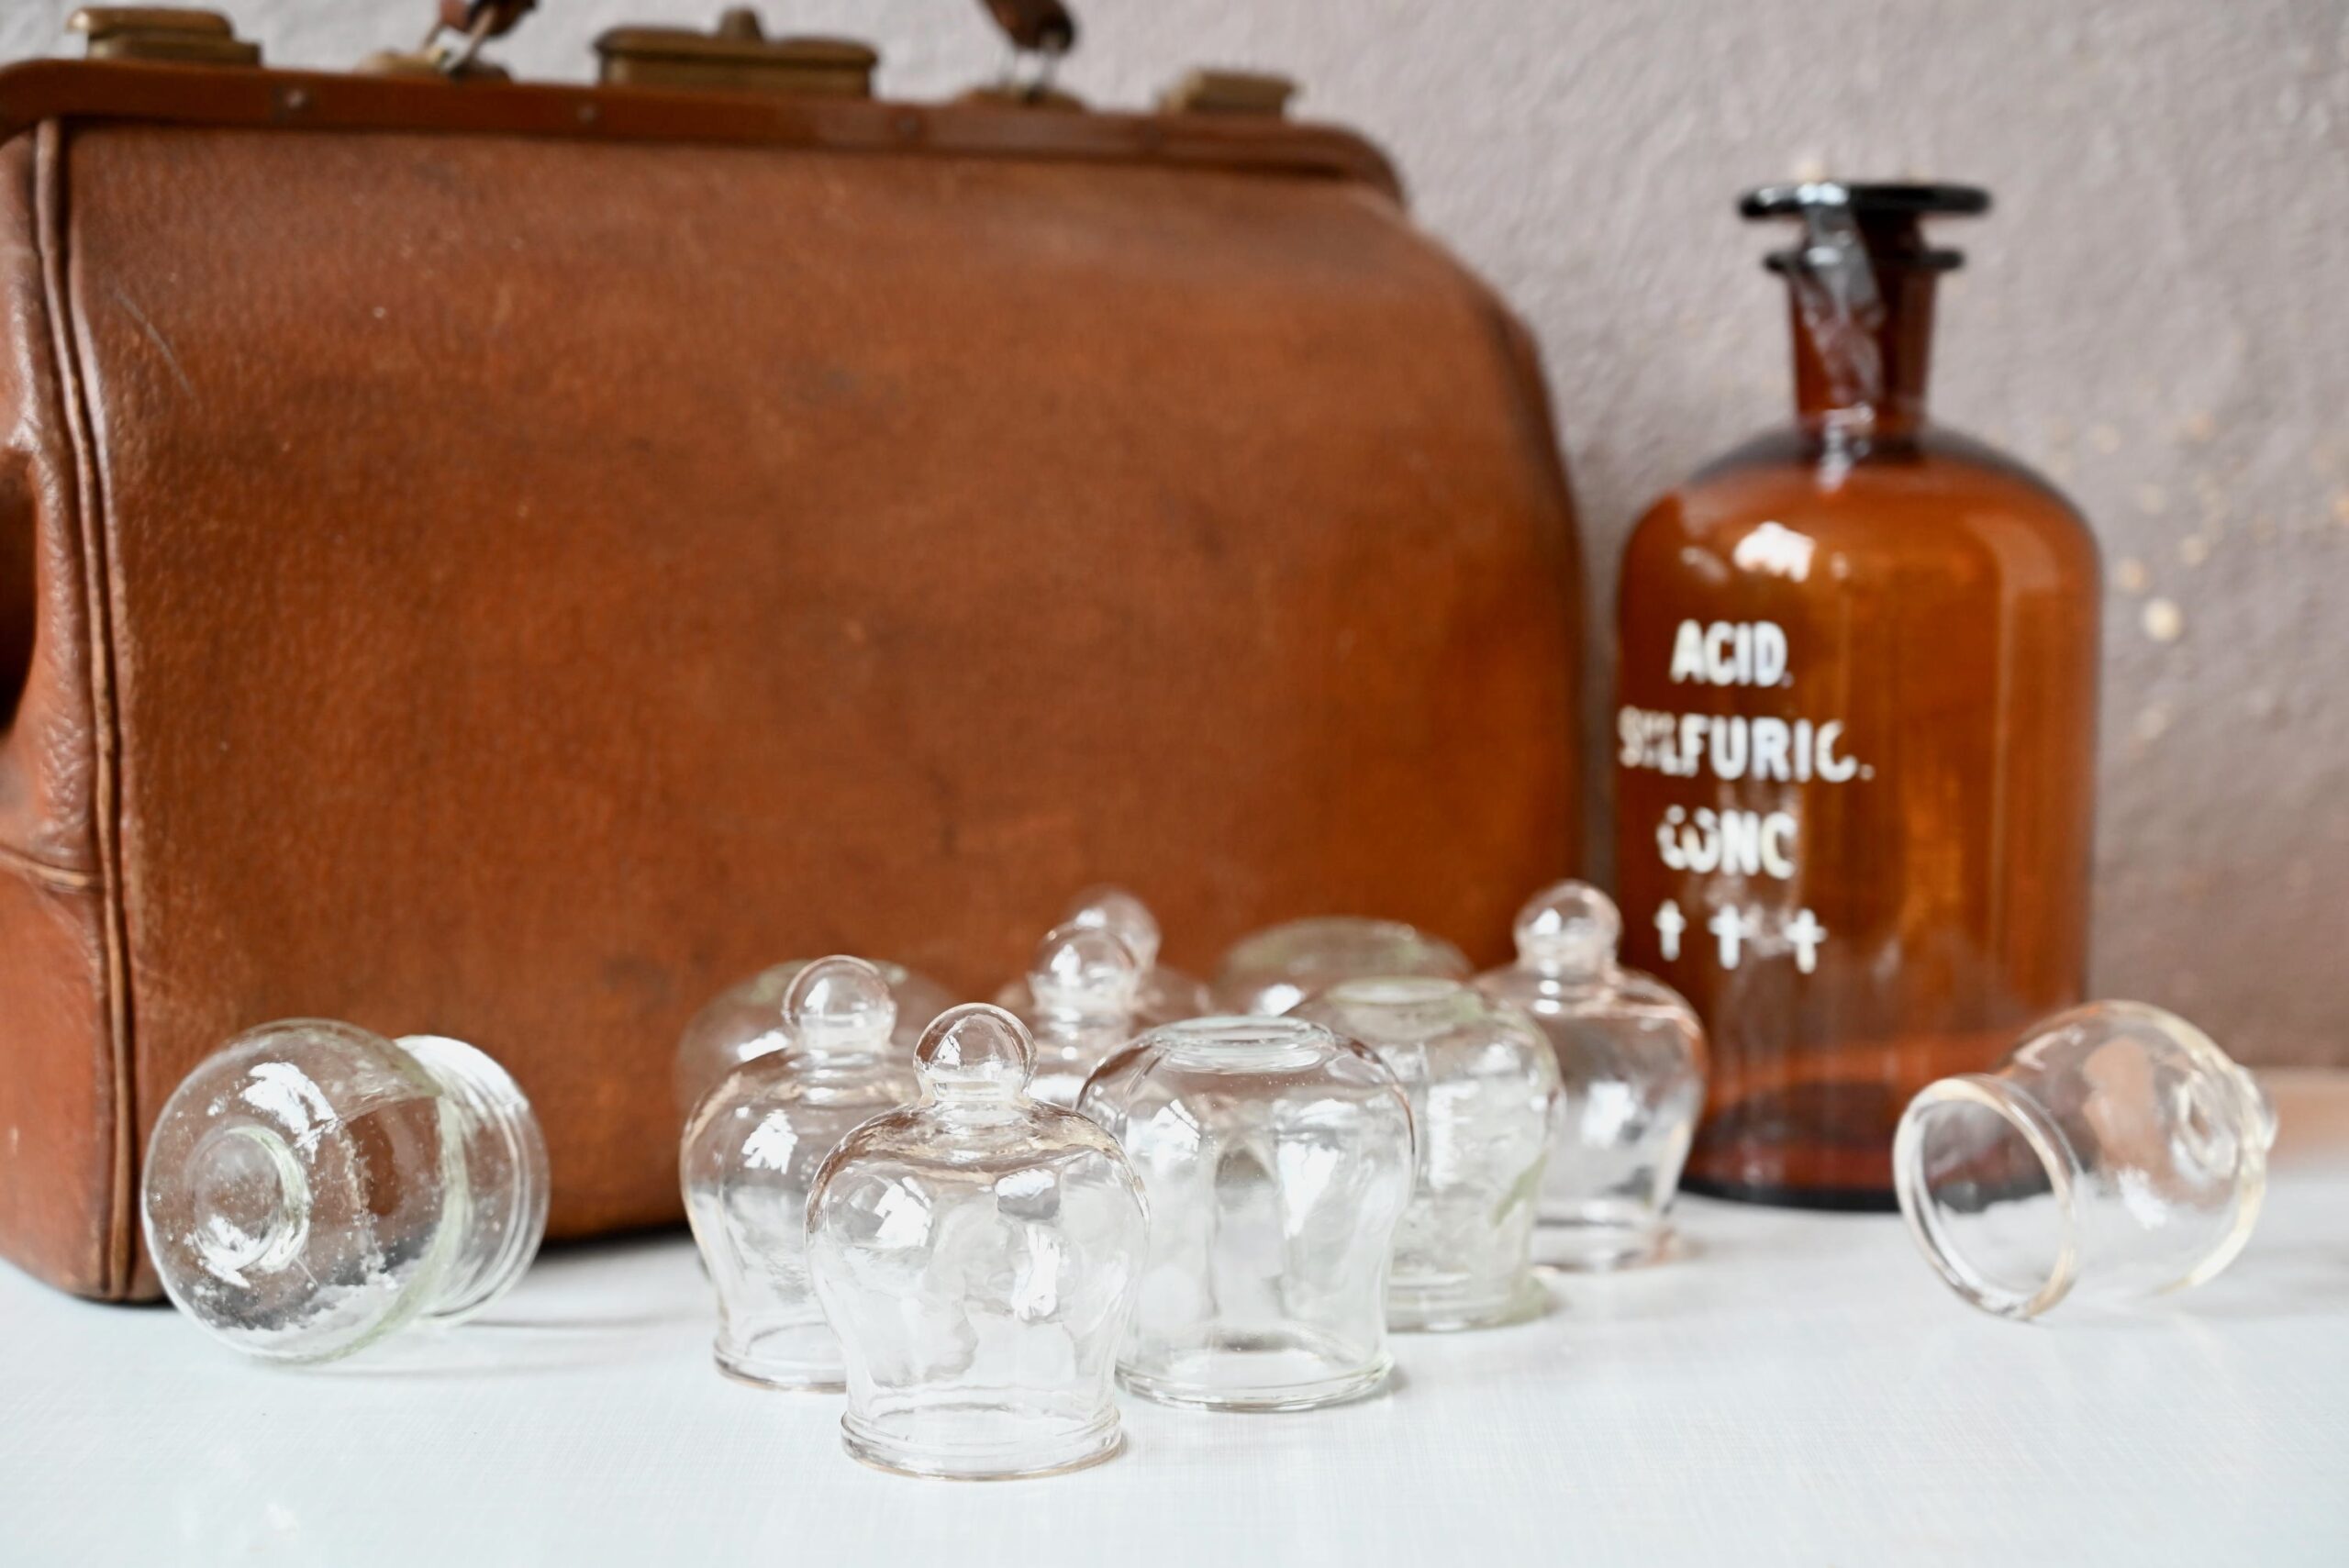 Ventouses vintage années 1950, Ensemble de 4 gobelets en verre